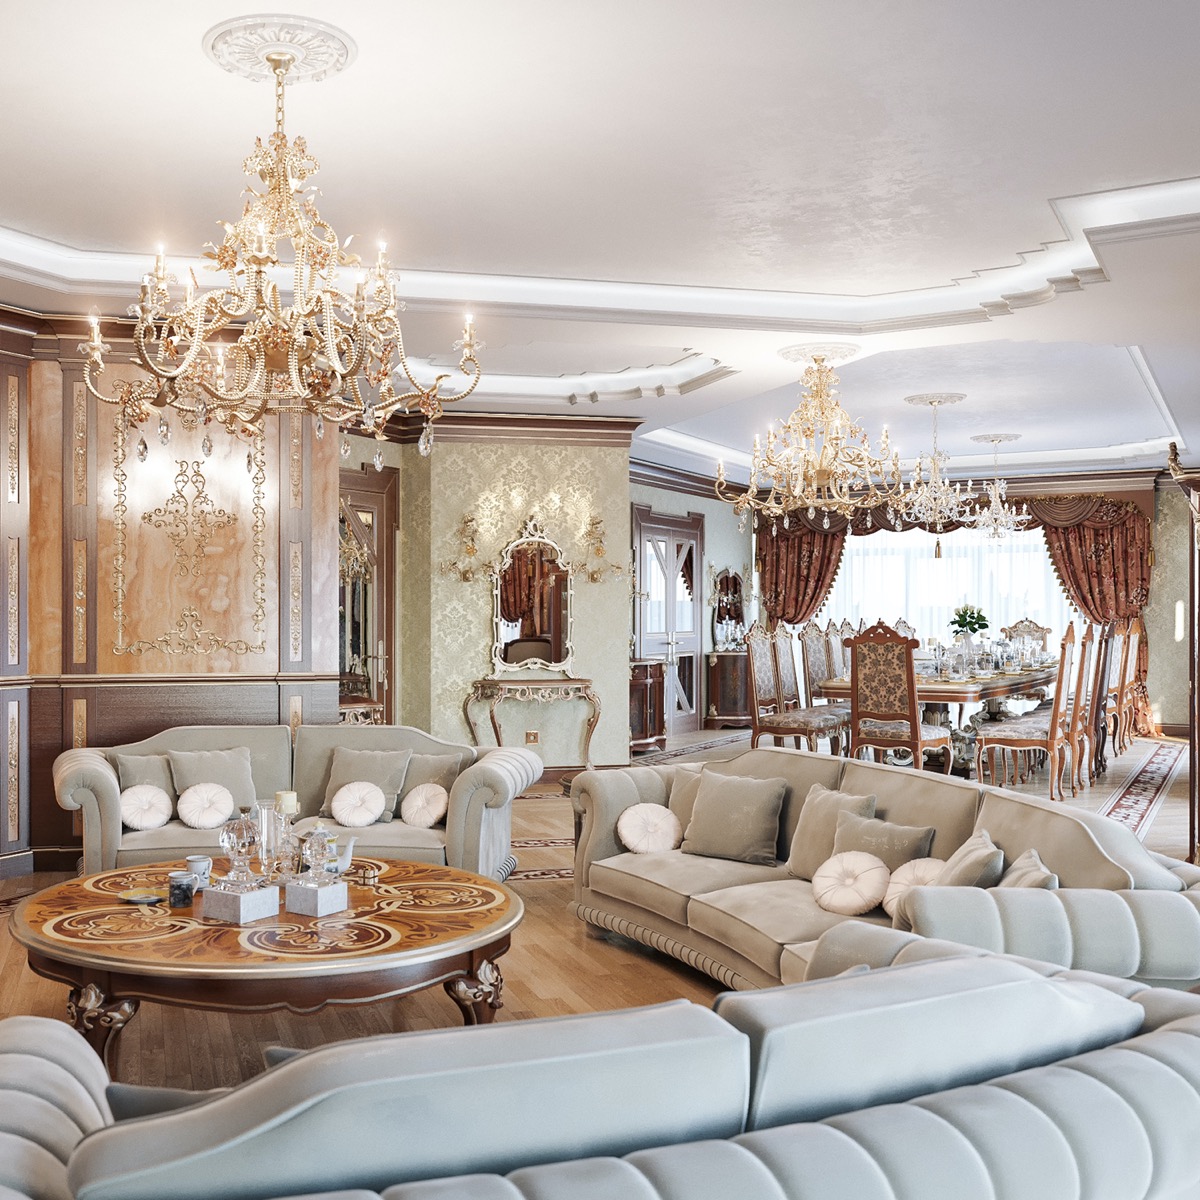 Contemporary luxury villa interior design in Dubai | ALGEDRA design |  Archinect